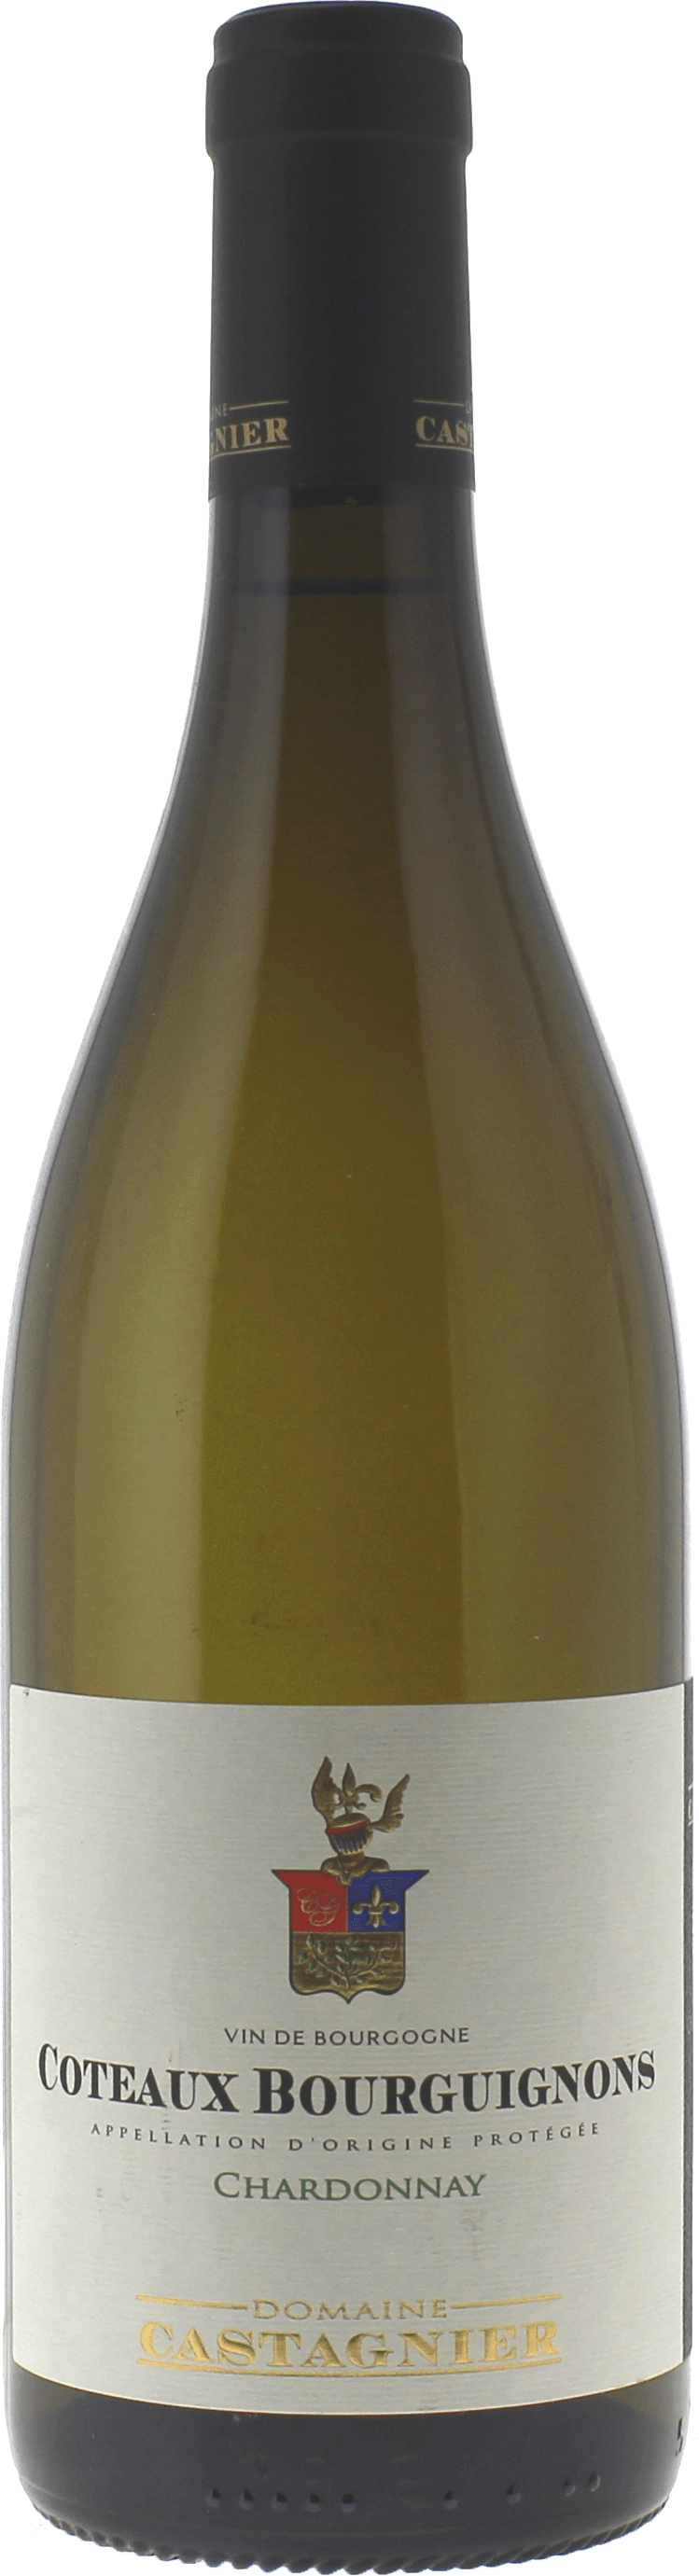 Coteaux bourguignons chardonnay 2020  CASTAGNIER, Bourgogne blanc